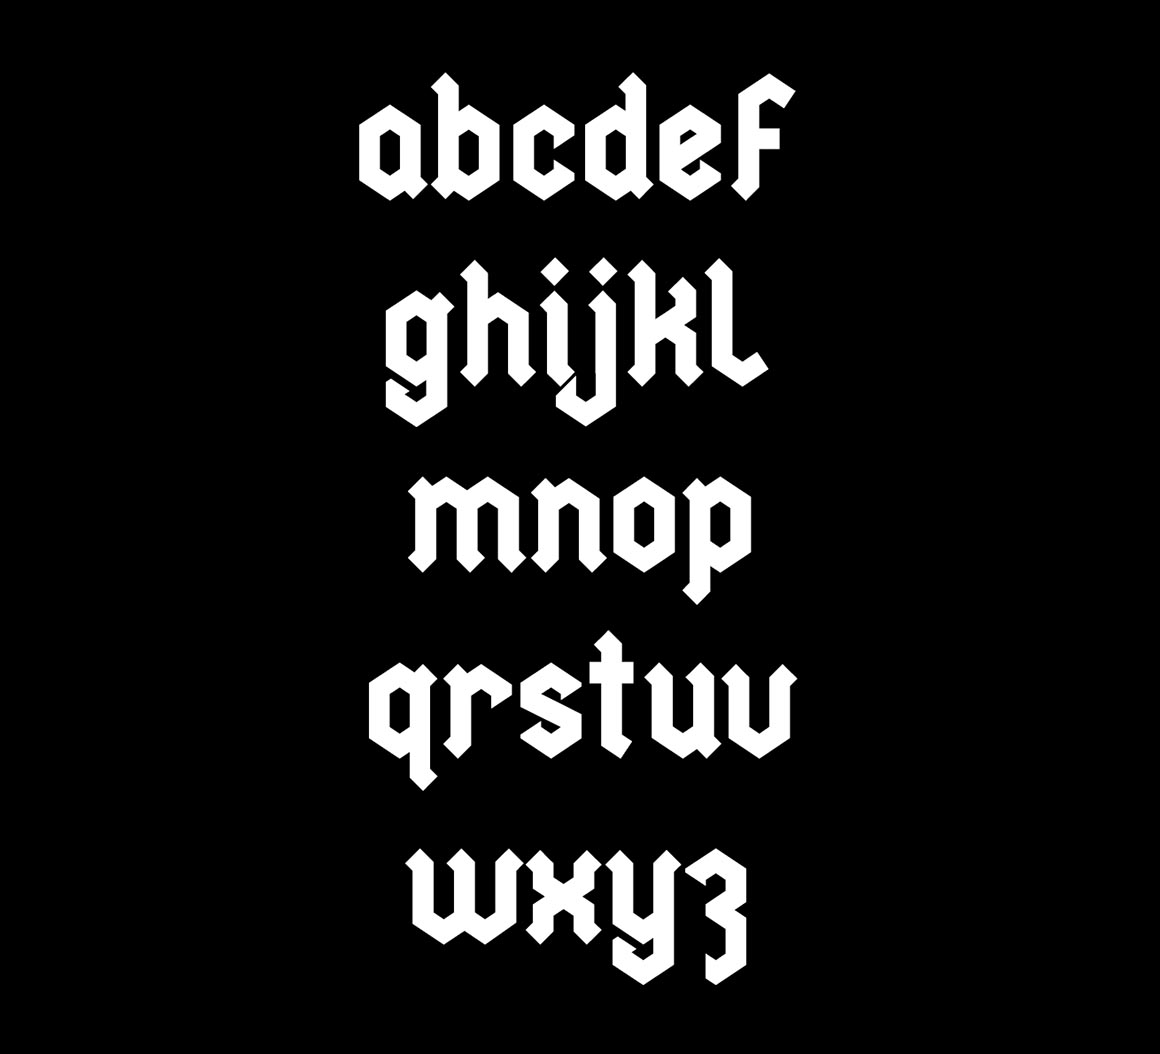 Metal Blackletter font